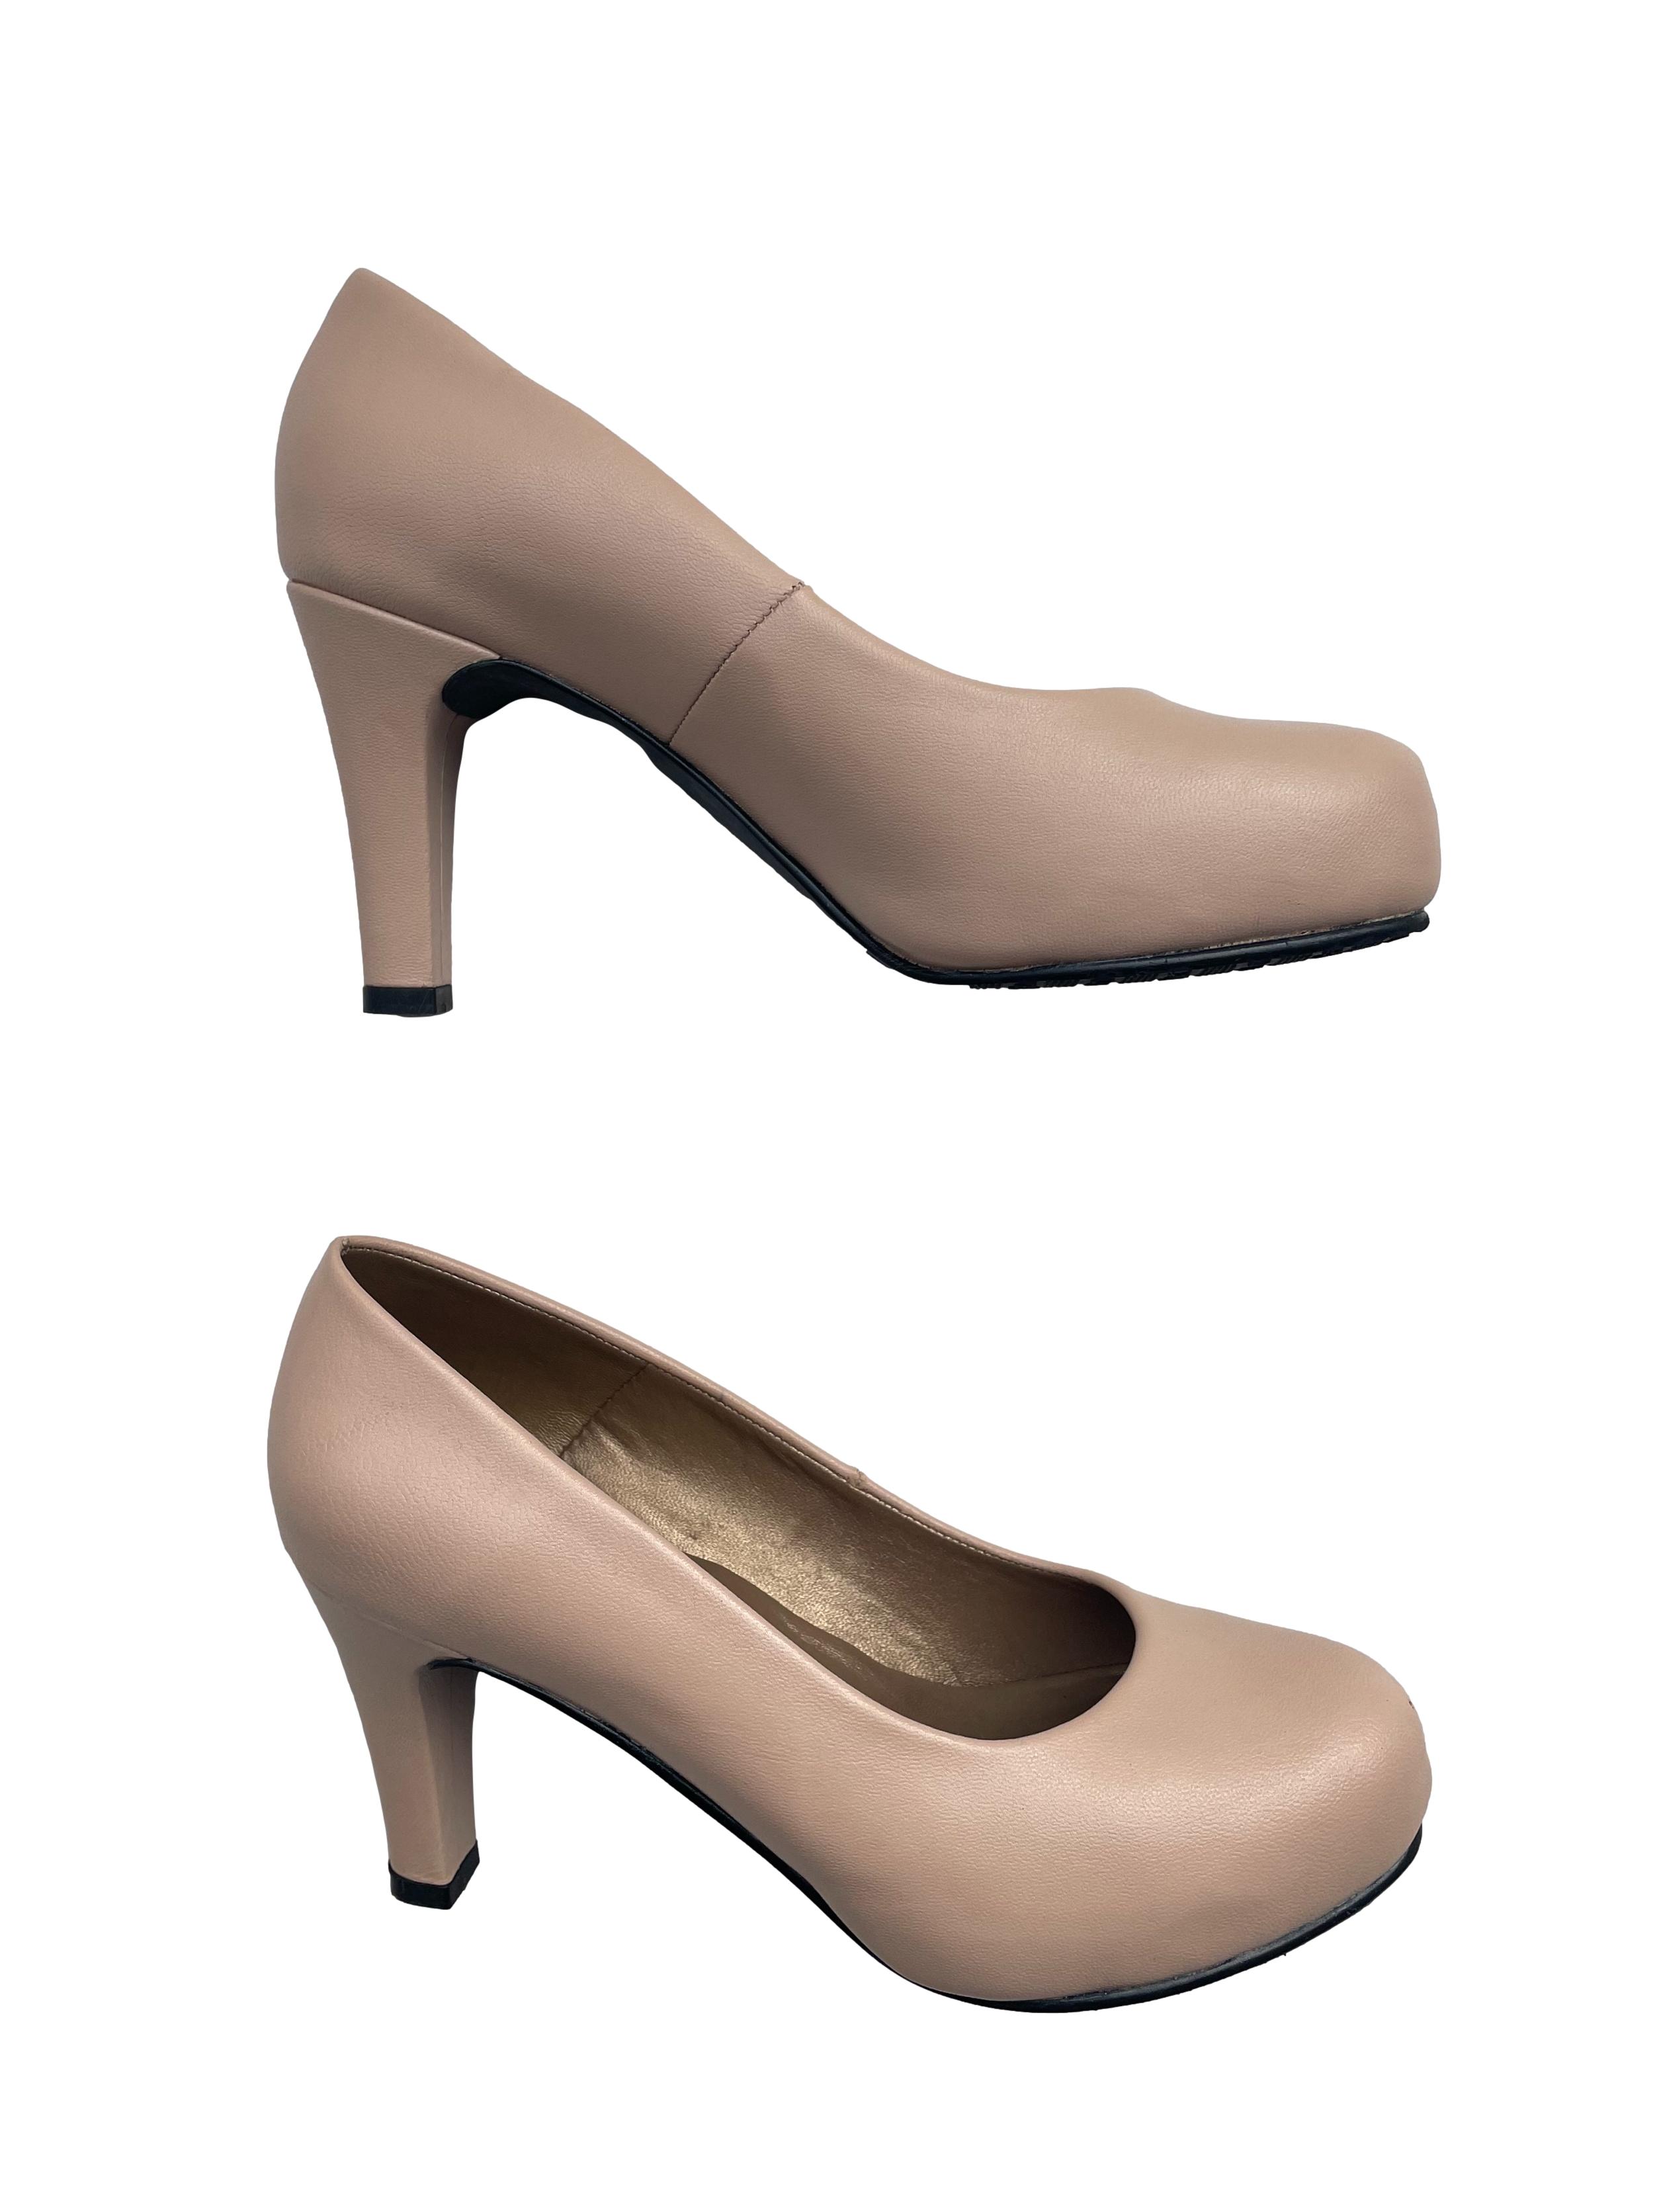 Zapatos Moreyka color nude 100% cuero, taco 9cm. | Las